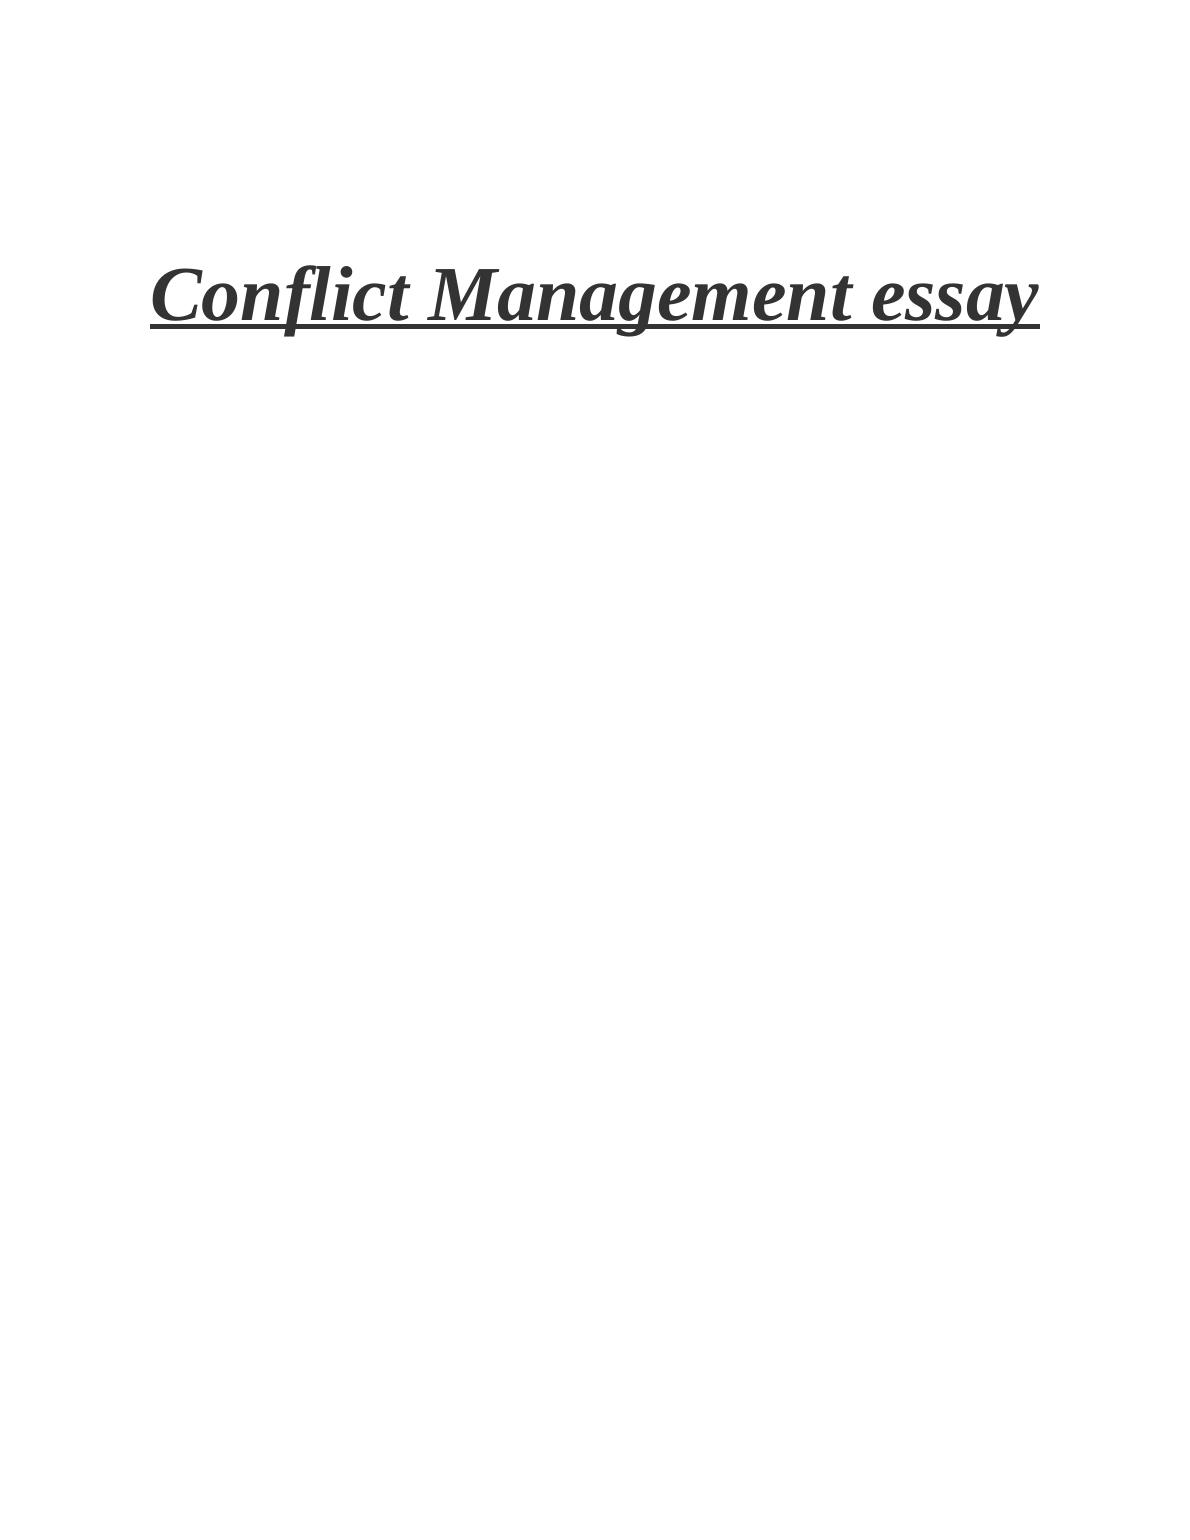 conflict management essay conclusion